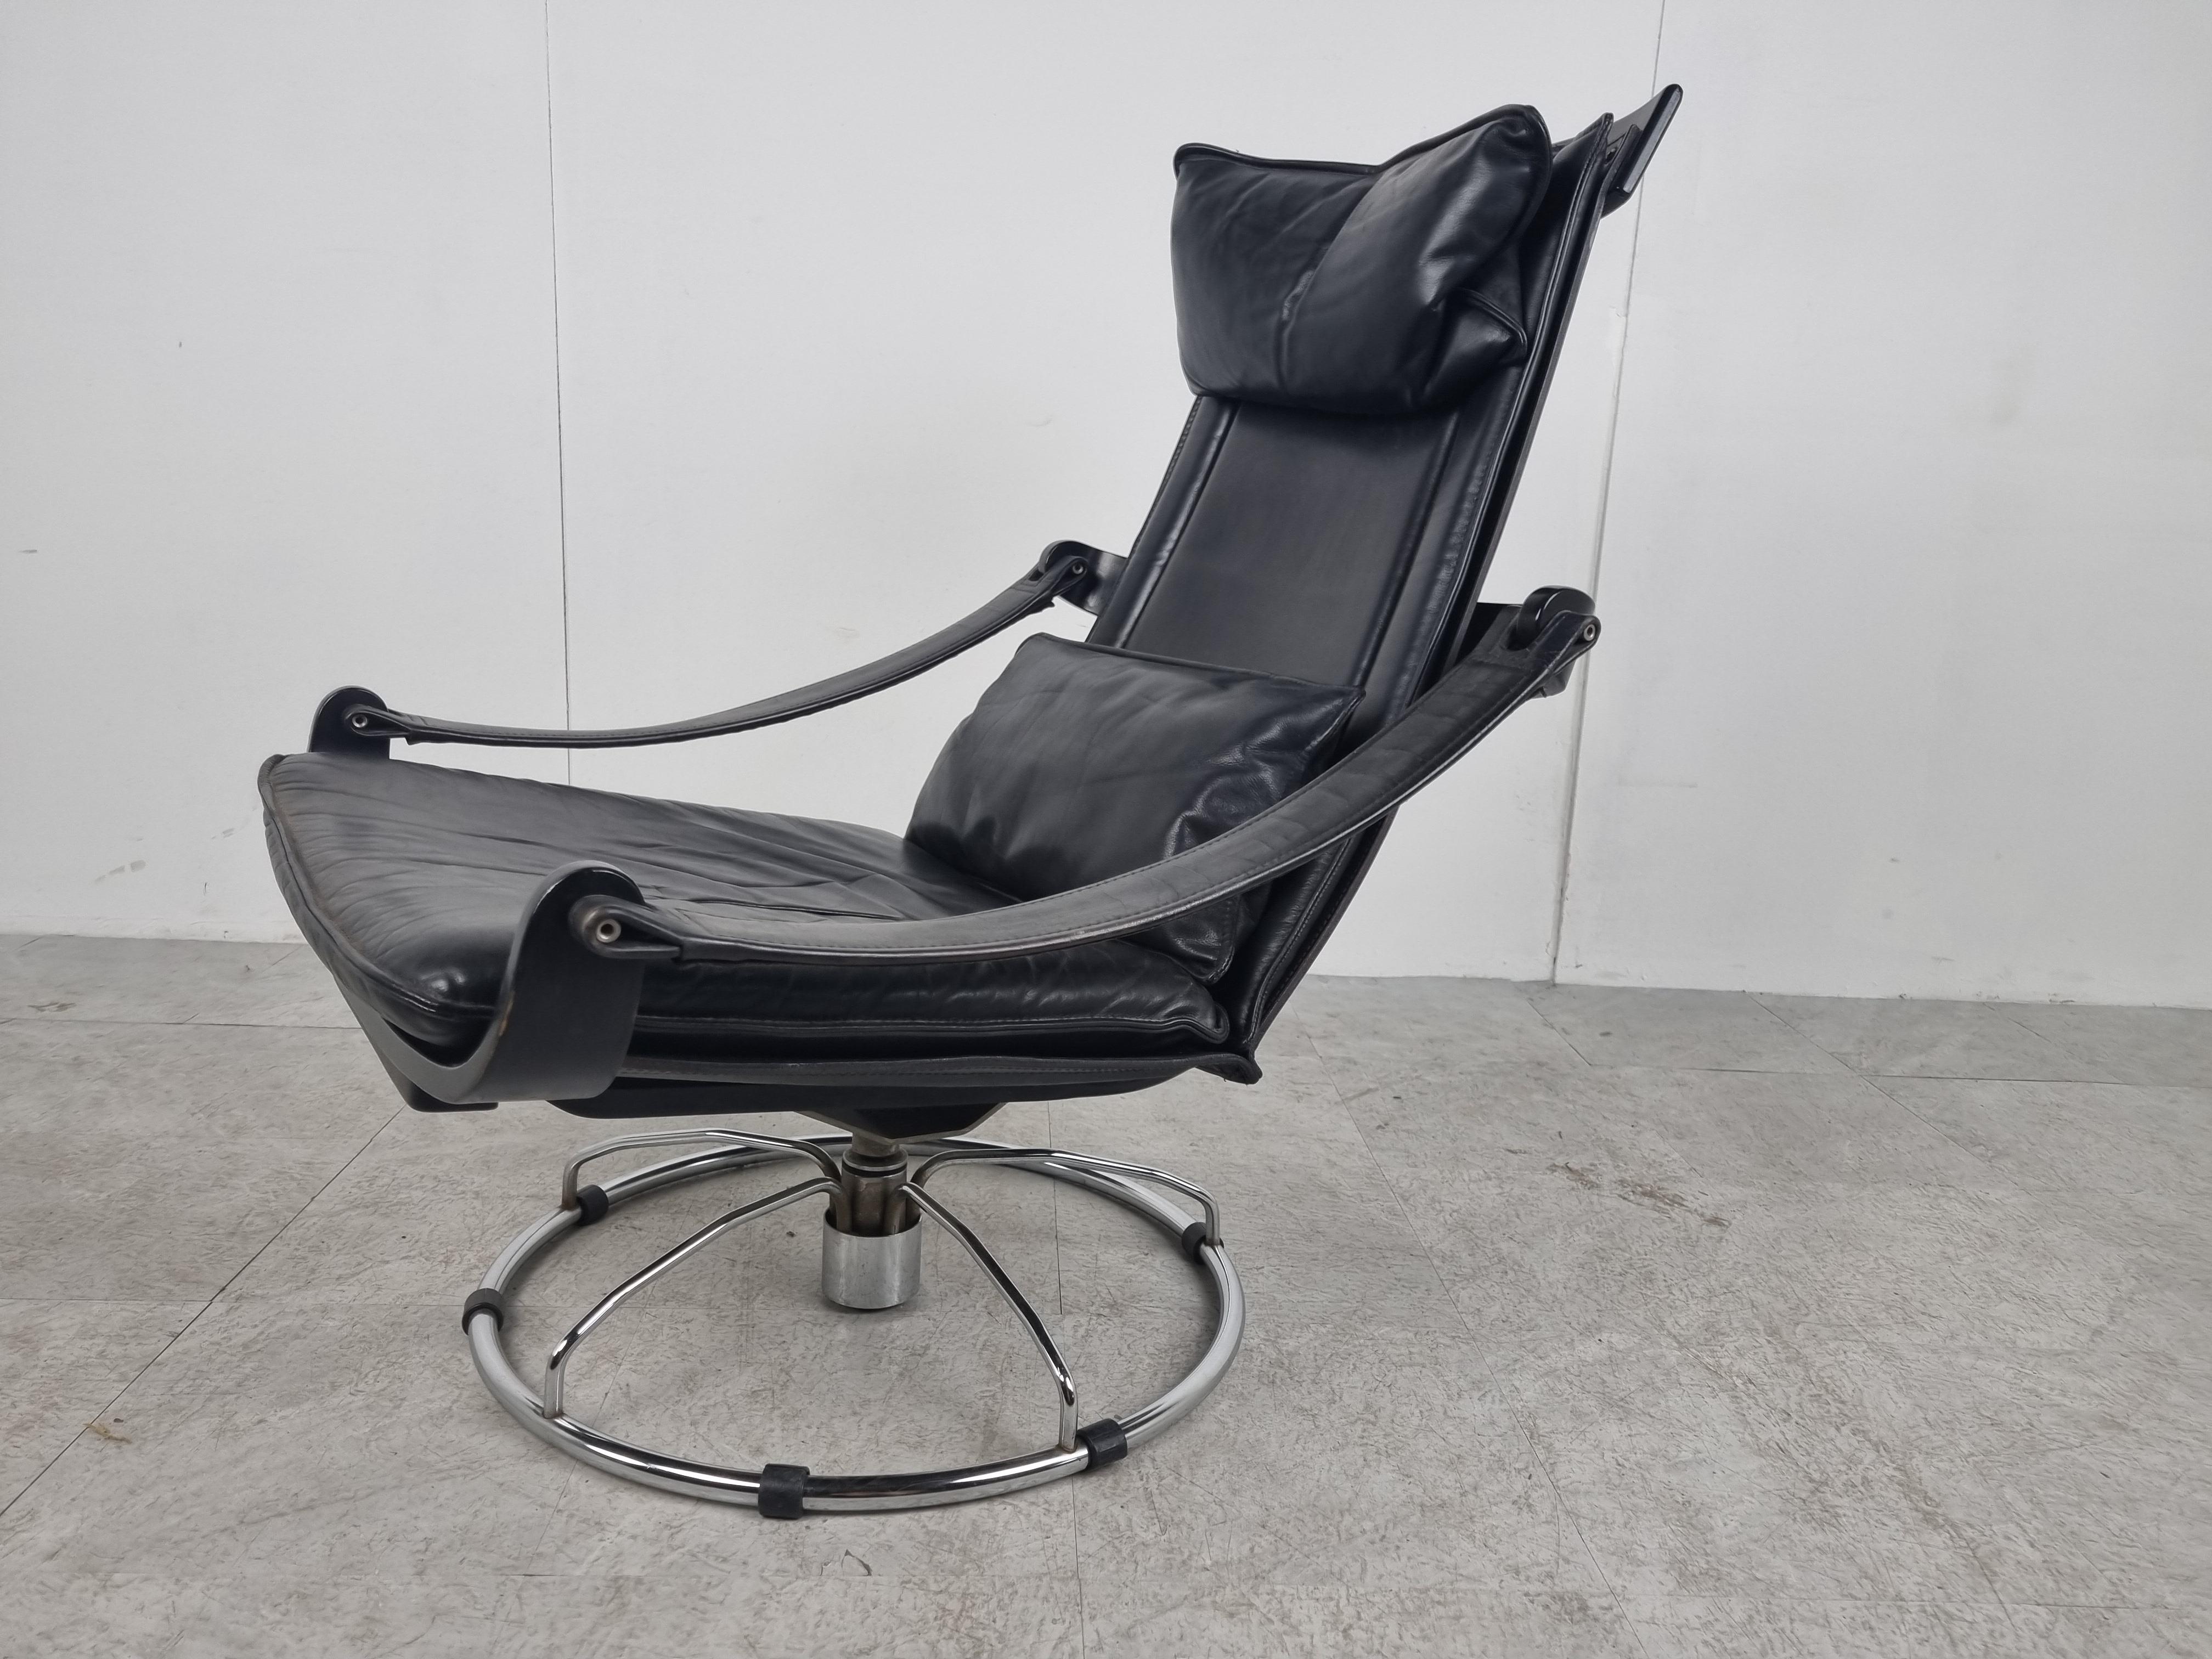 Vintage-Lounge-Drehstuhl aus Leder, entworfen von Ake Fribytter für Nelo Möbel.

Der Stuhl hat ein schwarzes Bugholzgestell auf einem verchromten Sockel und Armlehnen aus Slingleder.

Die dicken Lederkissen bieten viel Komfort.

Guter Zustand mit